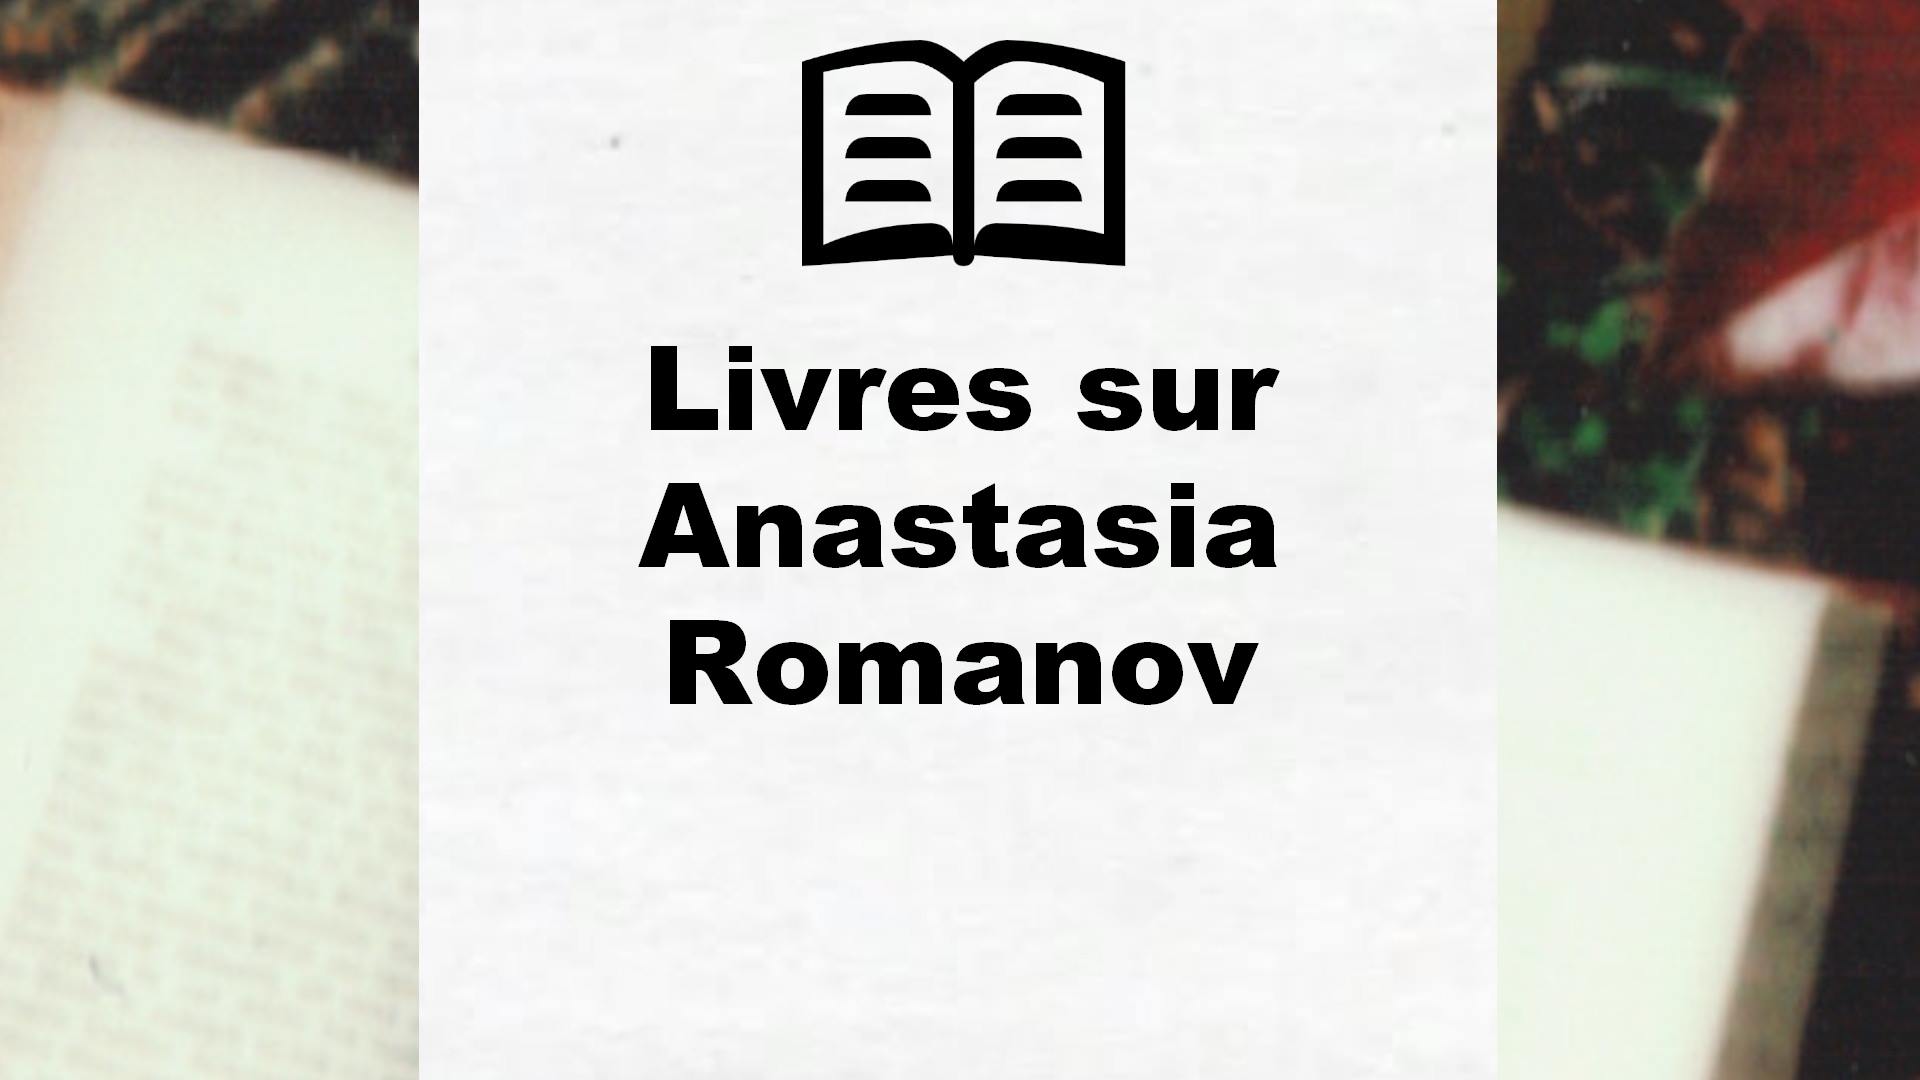 Livres sur Anastasia Romanov